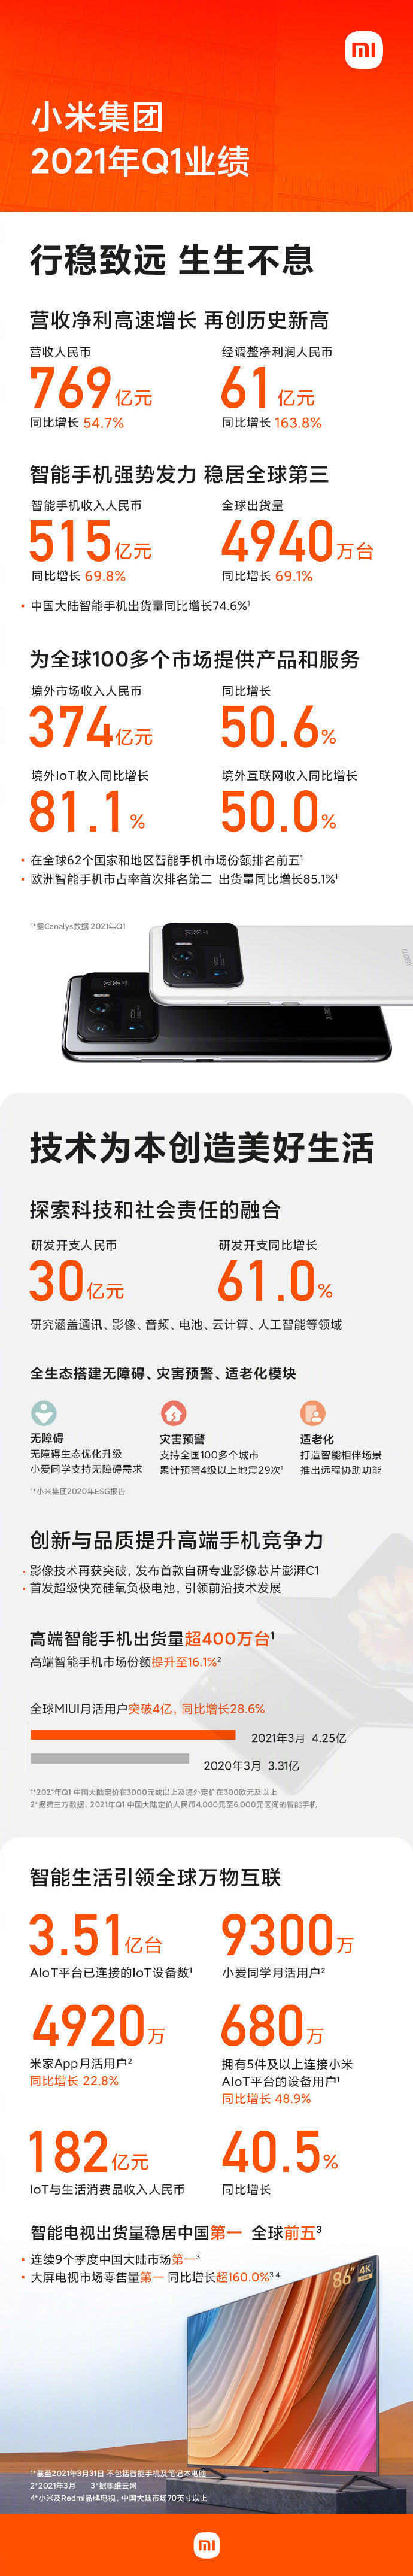 小米集团发布2021年Q1财报 小米电视出货量为中国第一